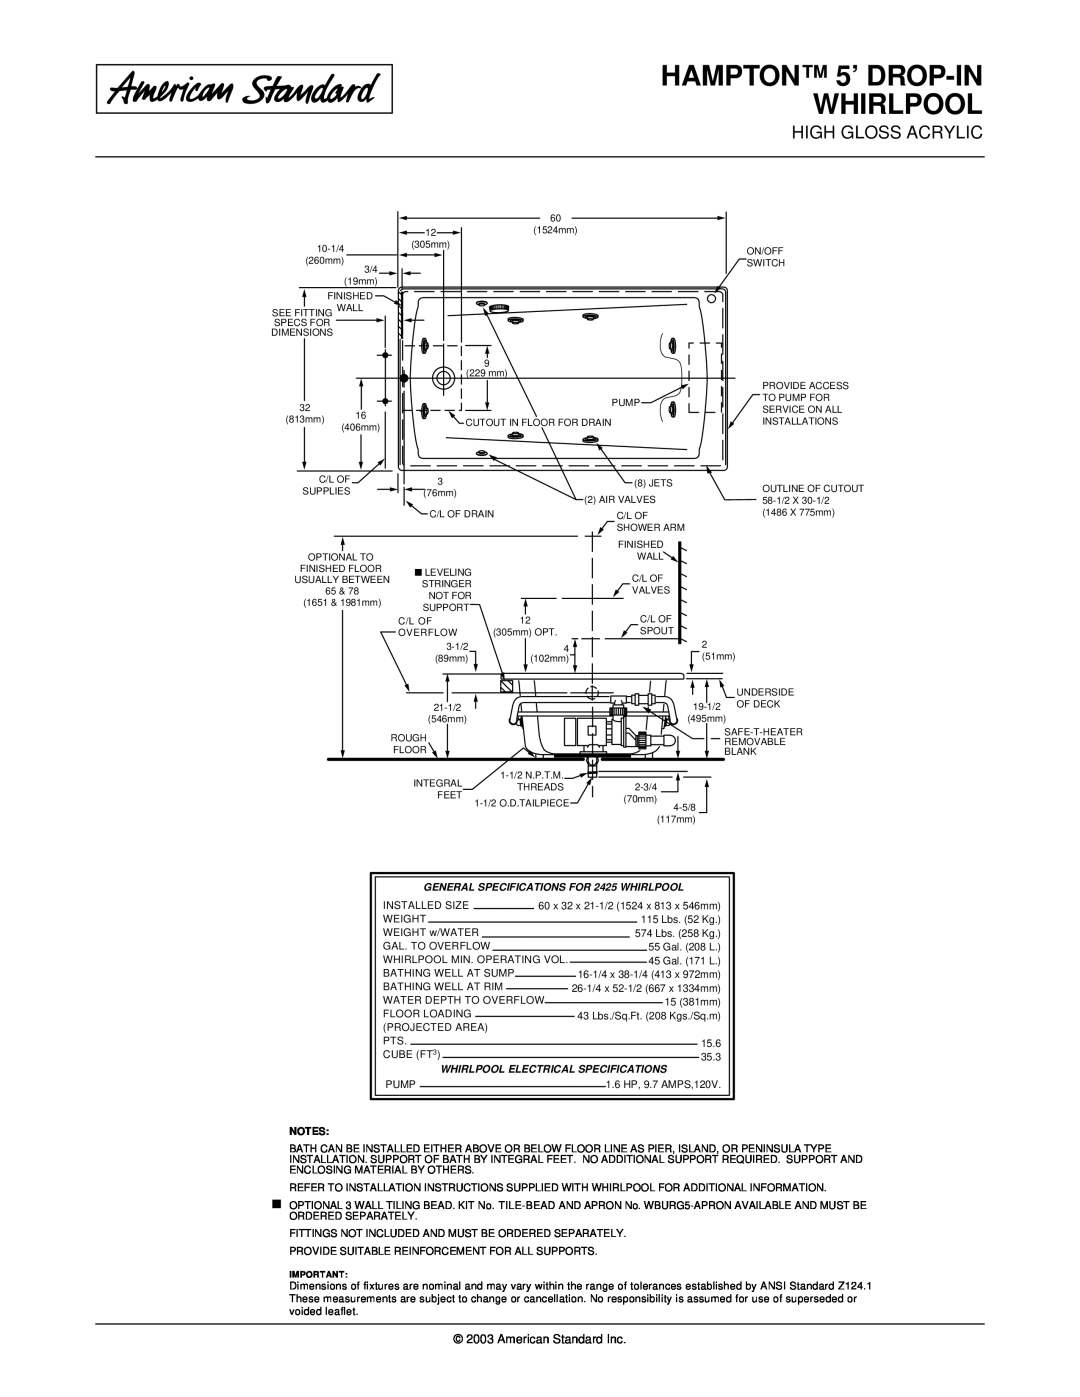 American Standard 2425.018WC HAMPTON 5’ DROP-IN WHIRLPOOL, American Standard Inc, Whirlpool Electrical Specifications 